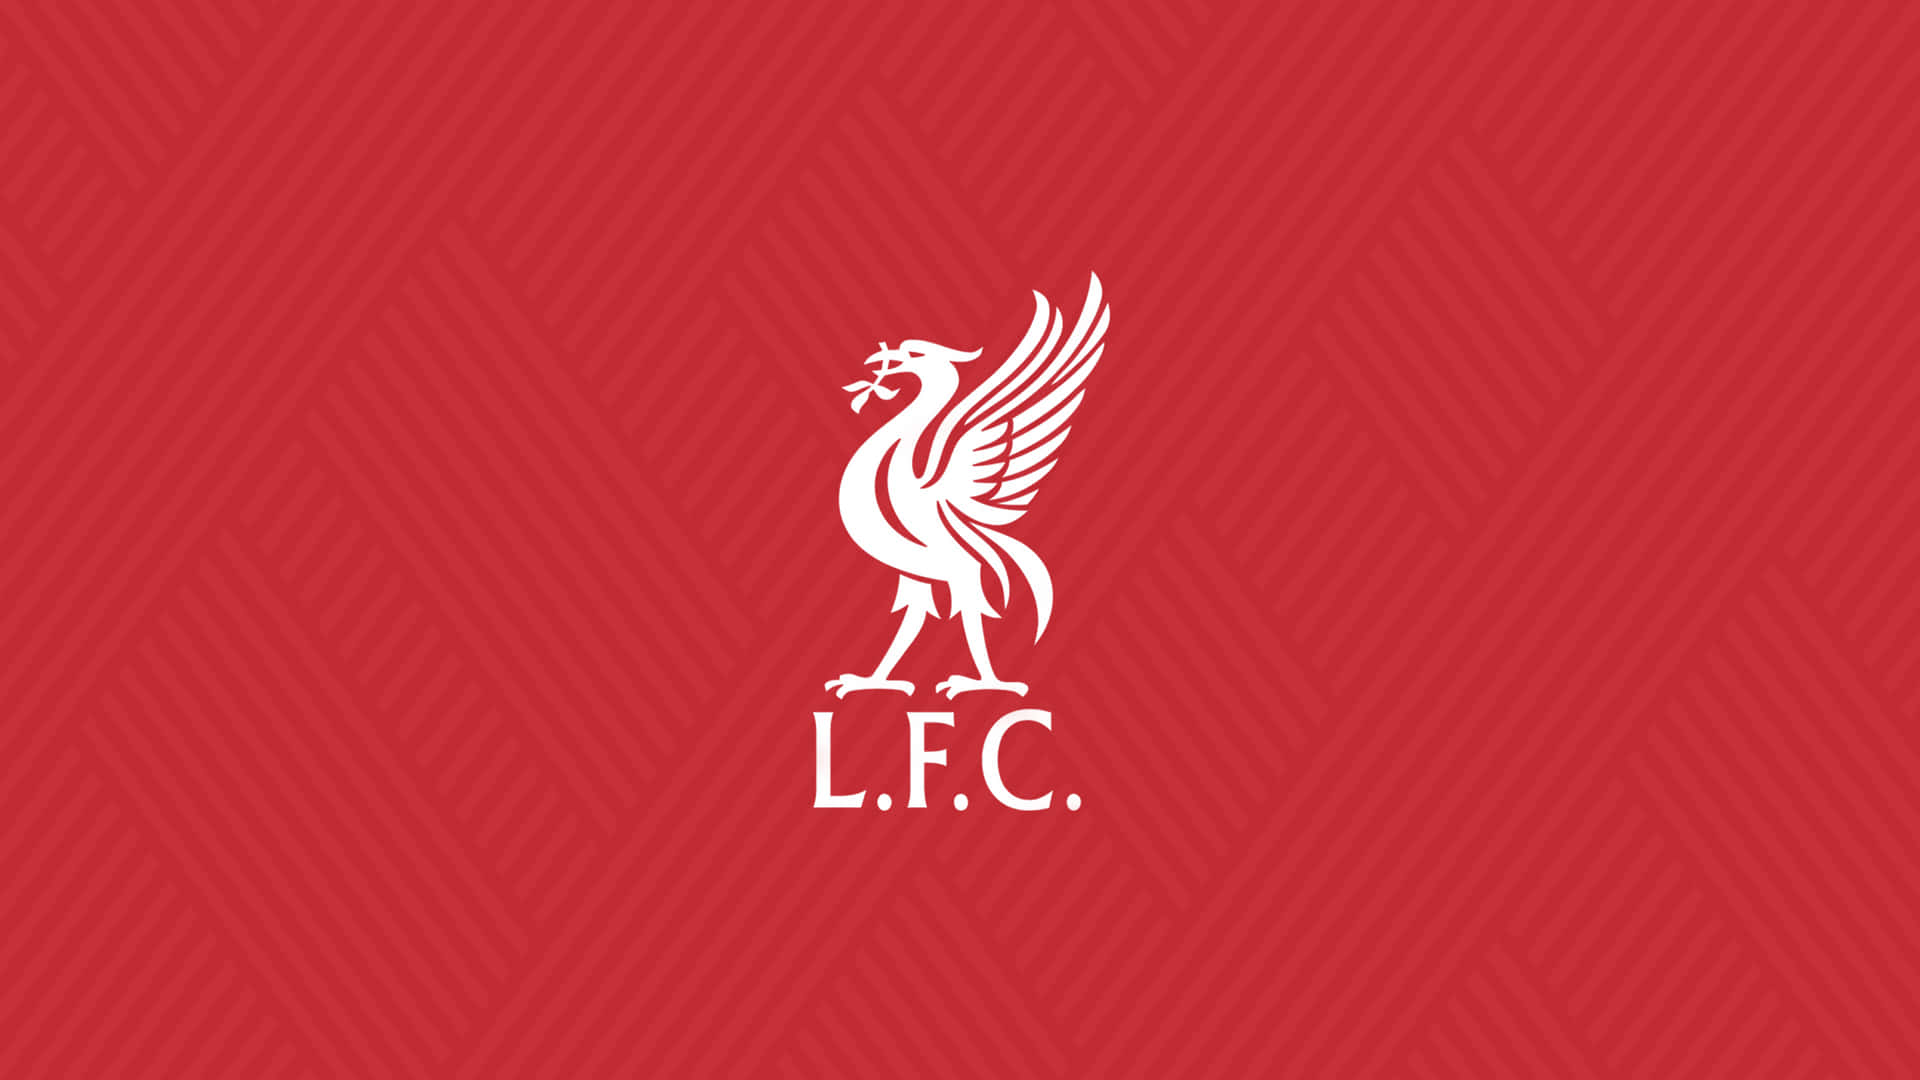 Nhận ngay hình nền Liverpool FC đầy màu sắc để trang trí desktop của bạn! Bạn có thể dễ dàng tìm kiếm và tải xuống các tùy chọn hình nền Liverpool FC đẹp mắt cho máy tính của mình, mà không mất phí. Nhấp vào hình ảnh để khám phá ngay bây giờ!